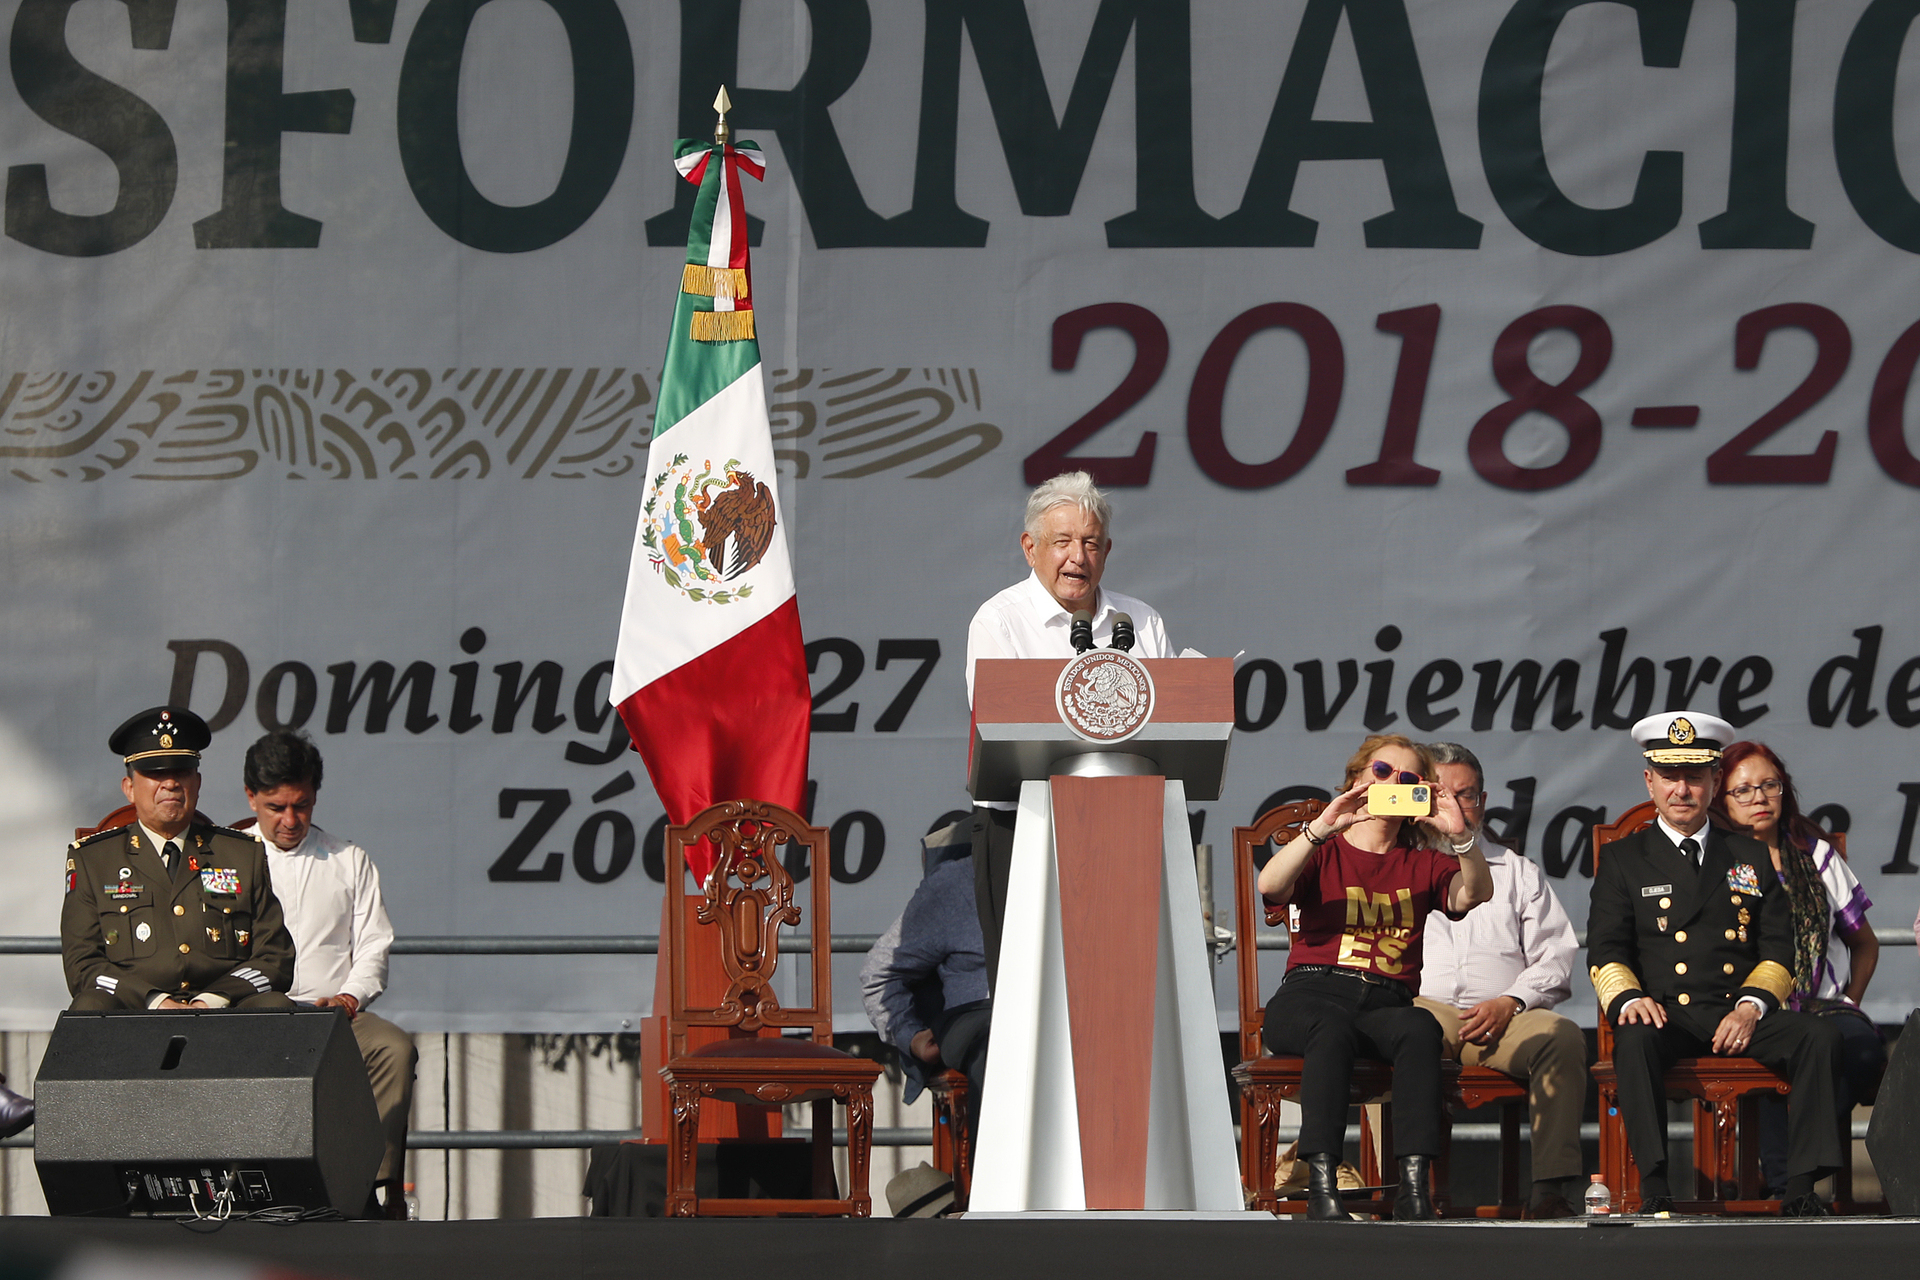 ¿Qué es el humanismo mexicano según el discurso de López Obrador?